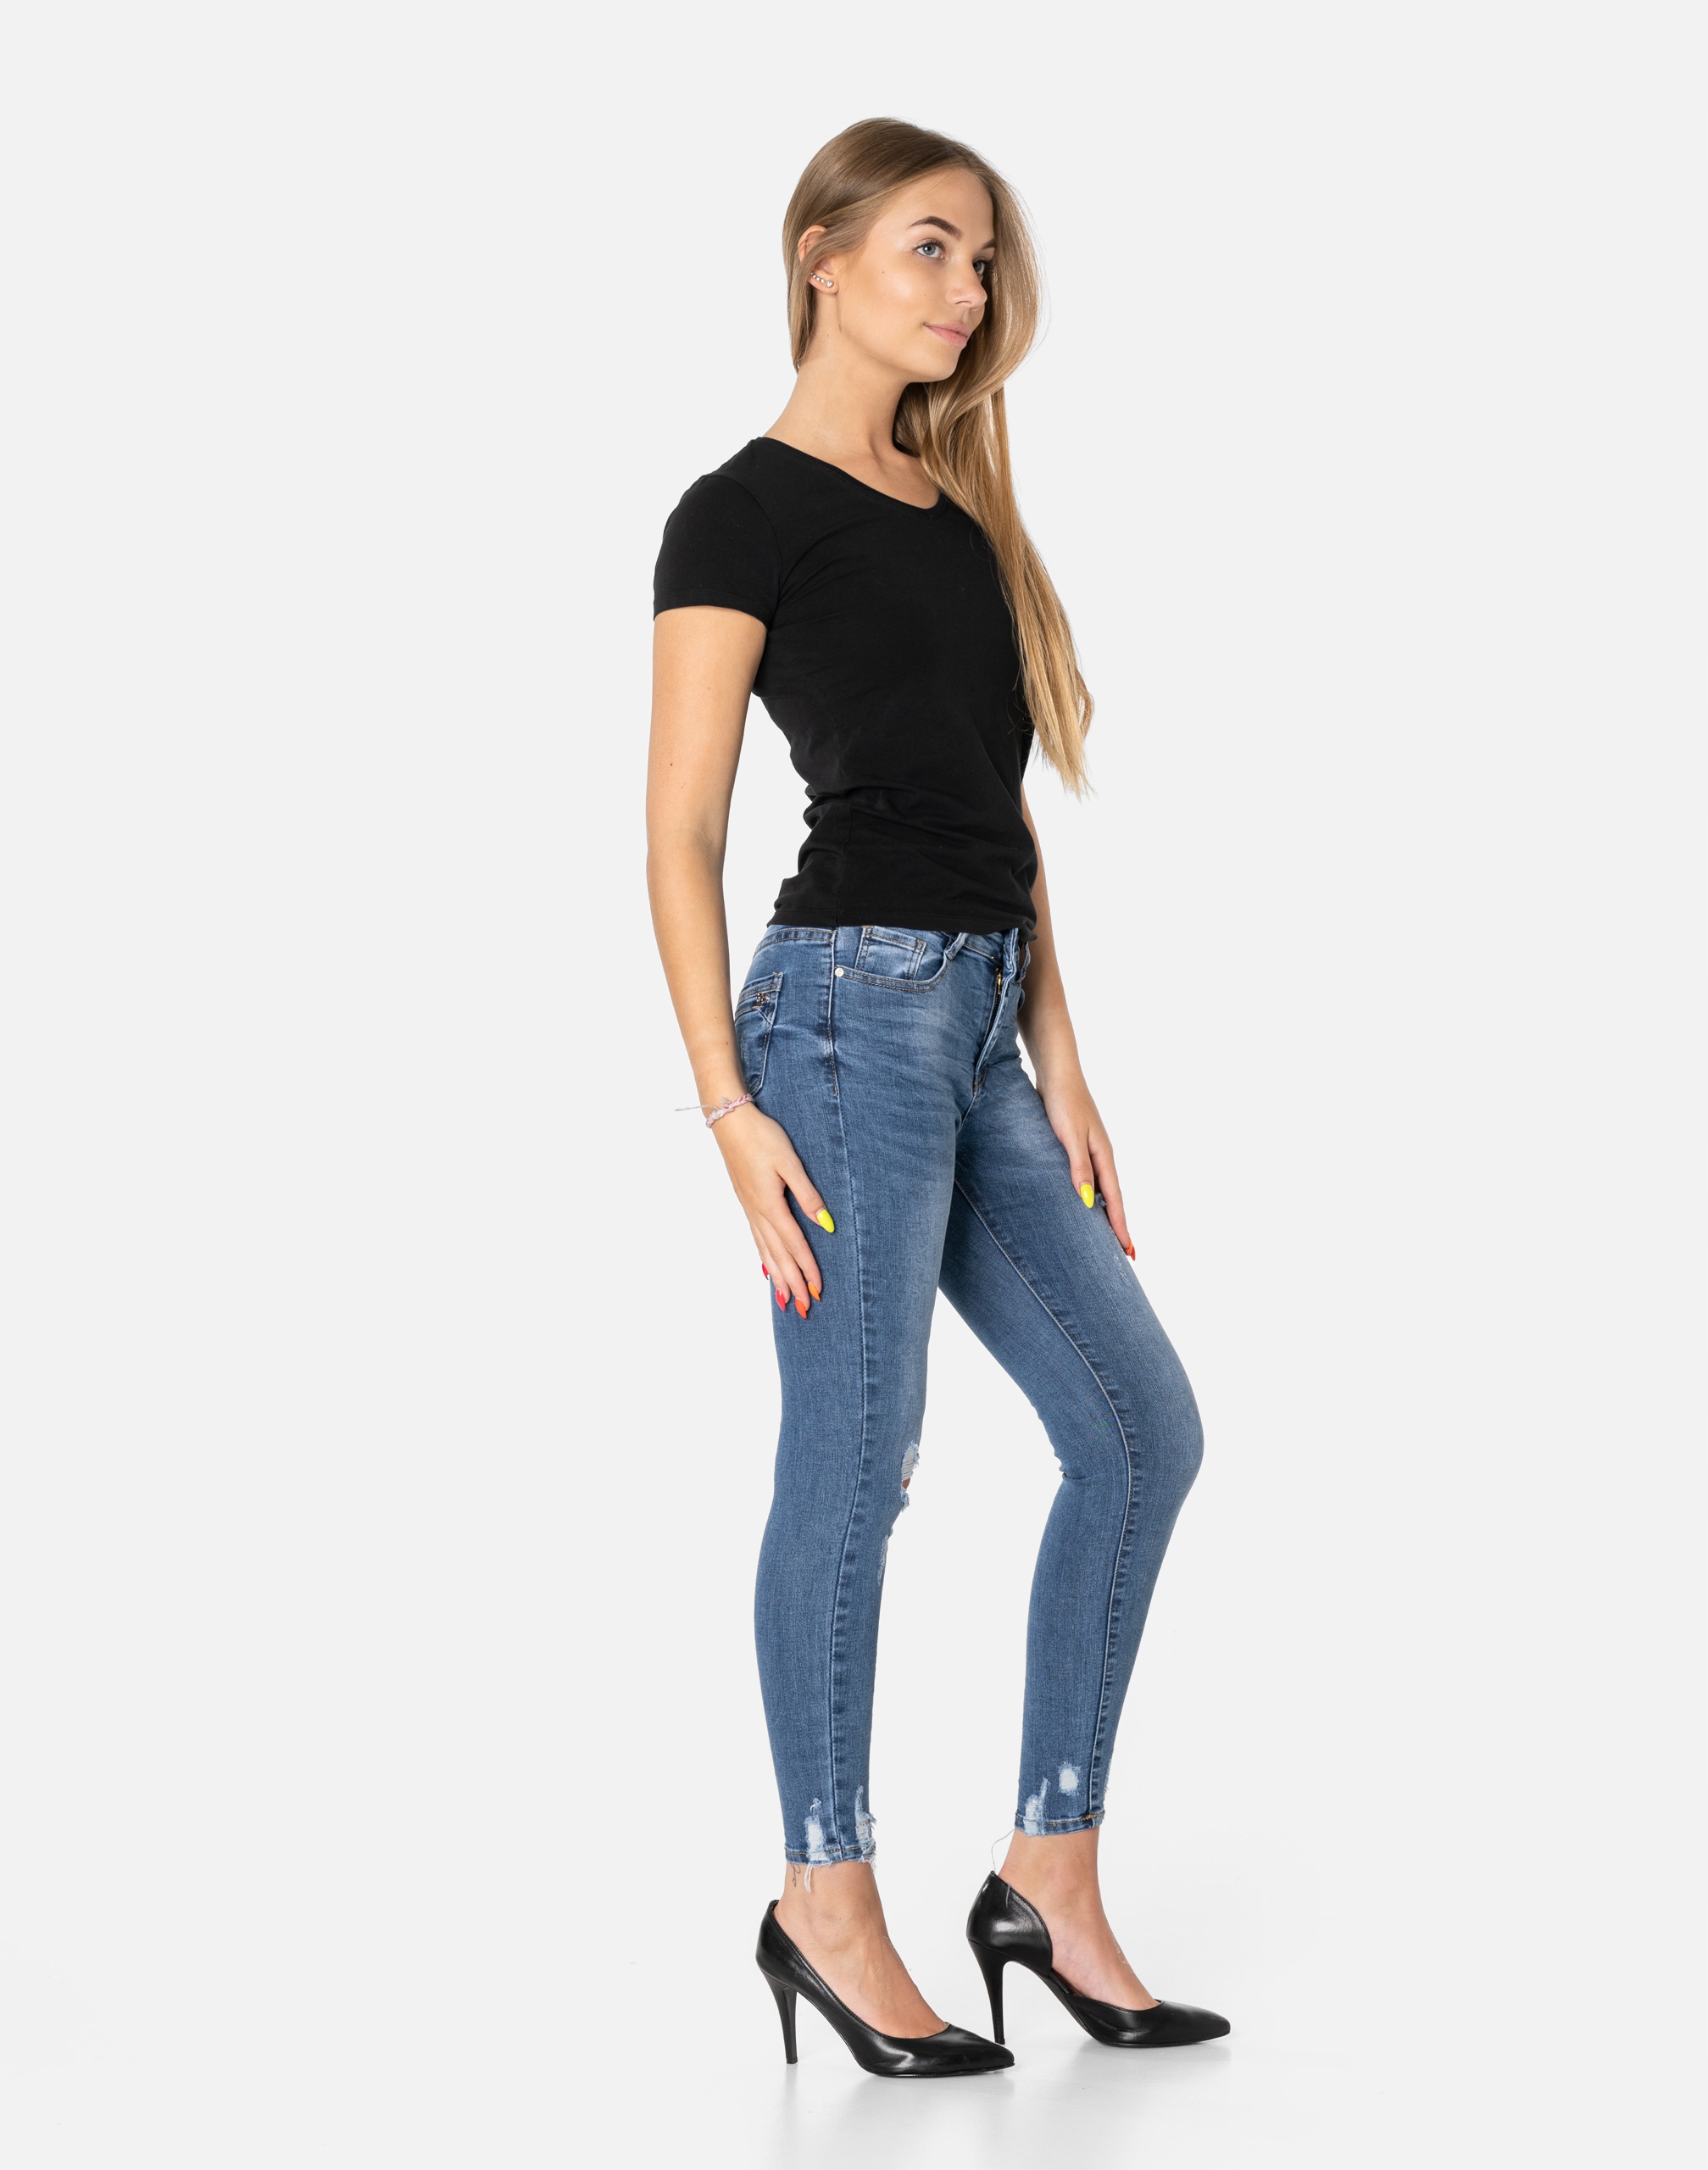 Женские джинсы с дырками S5586 R 31 дополнительные функции ripped abrasions push-up slimming